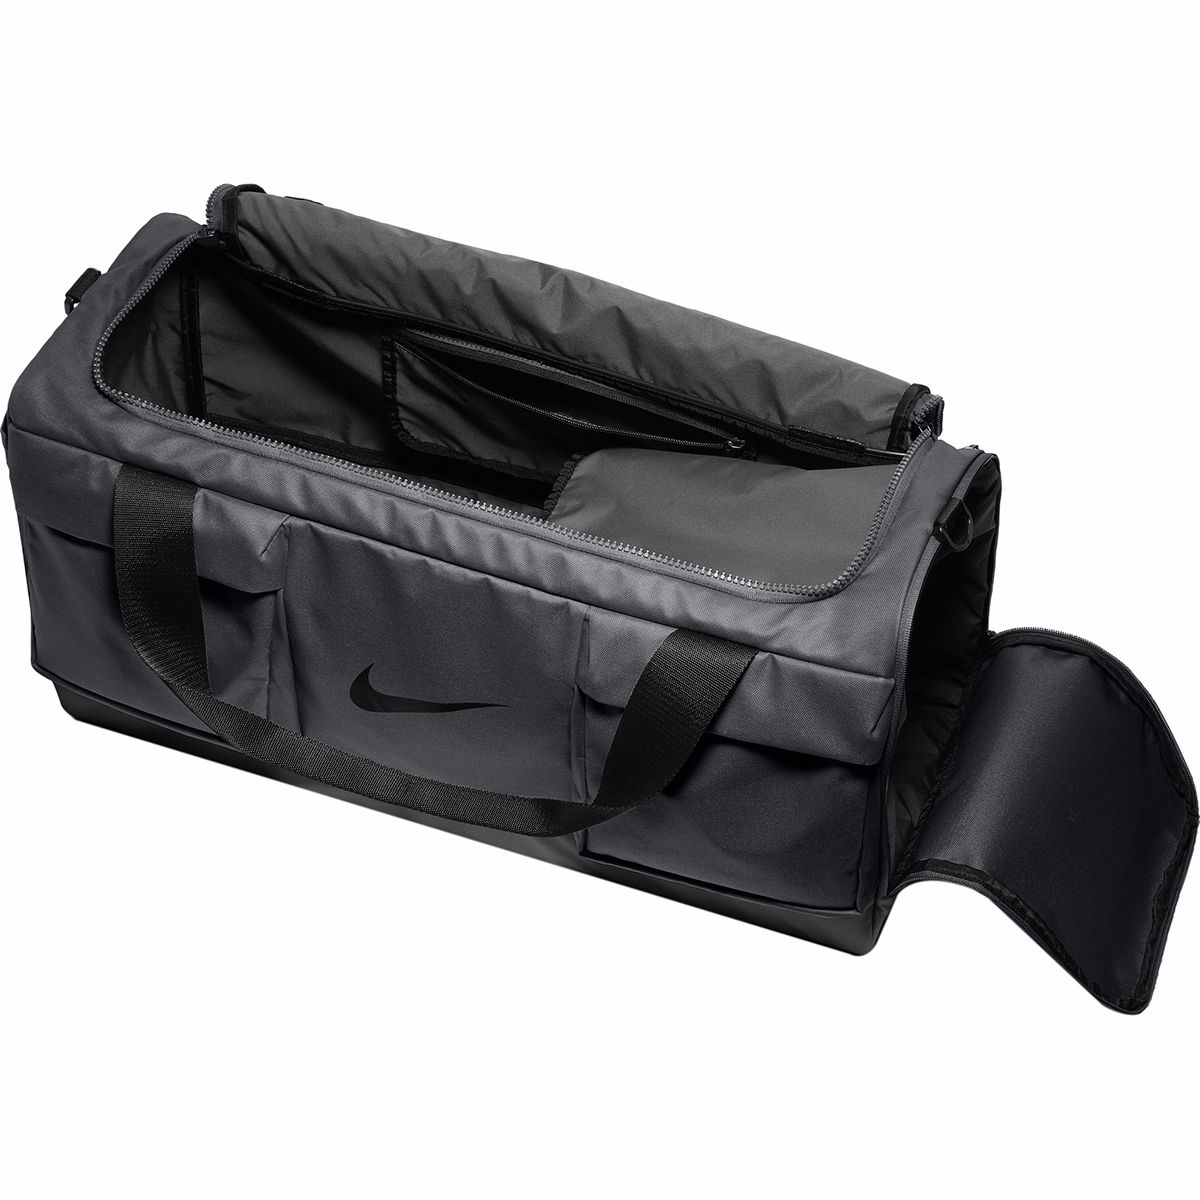 Vapor Power Medium Duffel Bag -